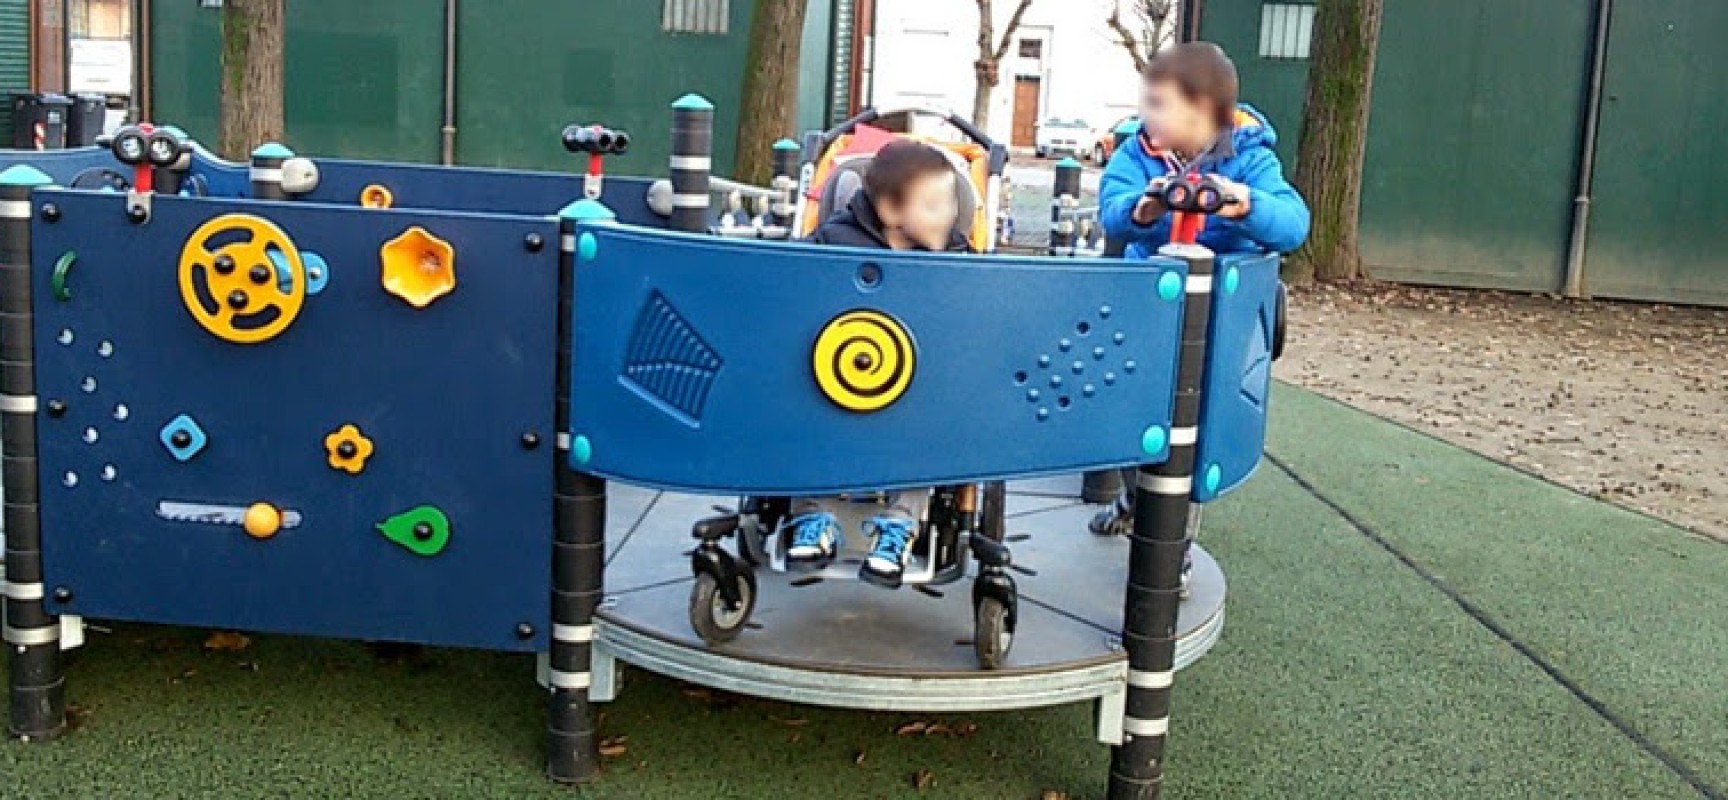 Meetup Bisceglie 5 Stelle chiede adeguamento parchi giochi per bambini disabili